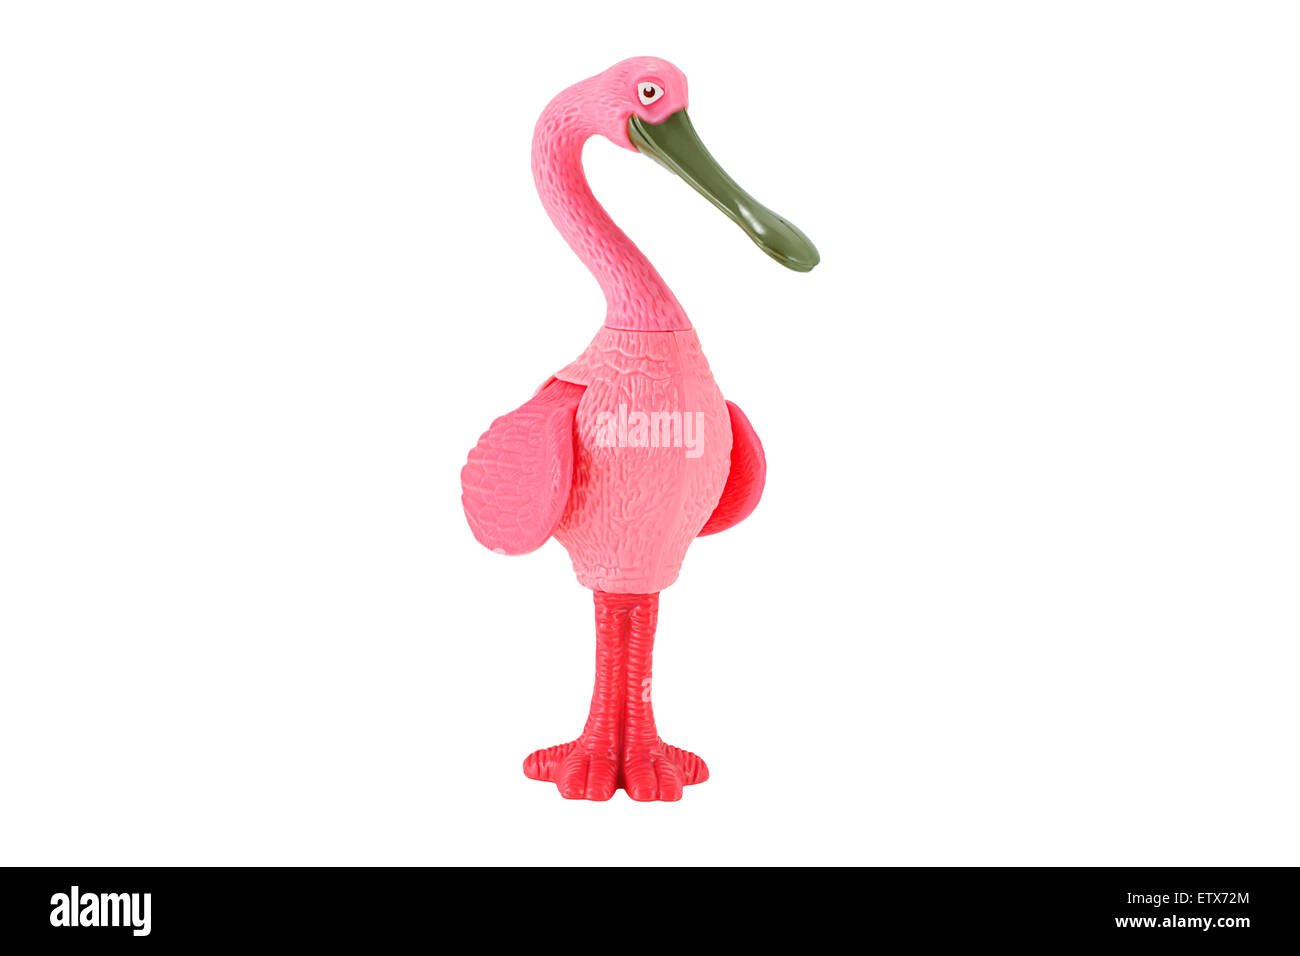 Bangkok, Thaïlande - 08 Février, 2015 : Kipopink flamingo bird jouet en plastique personnage de film d'animation RIO. Banque D'Images